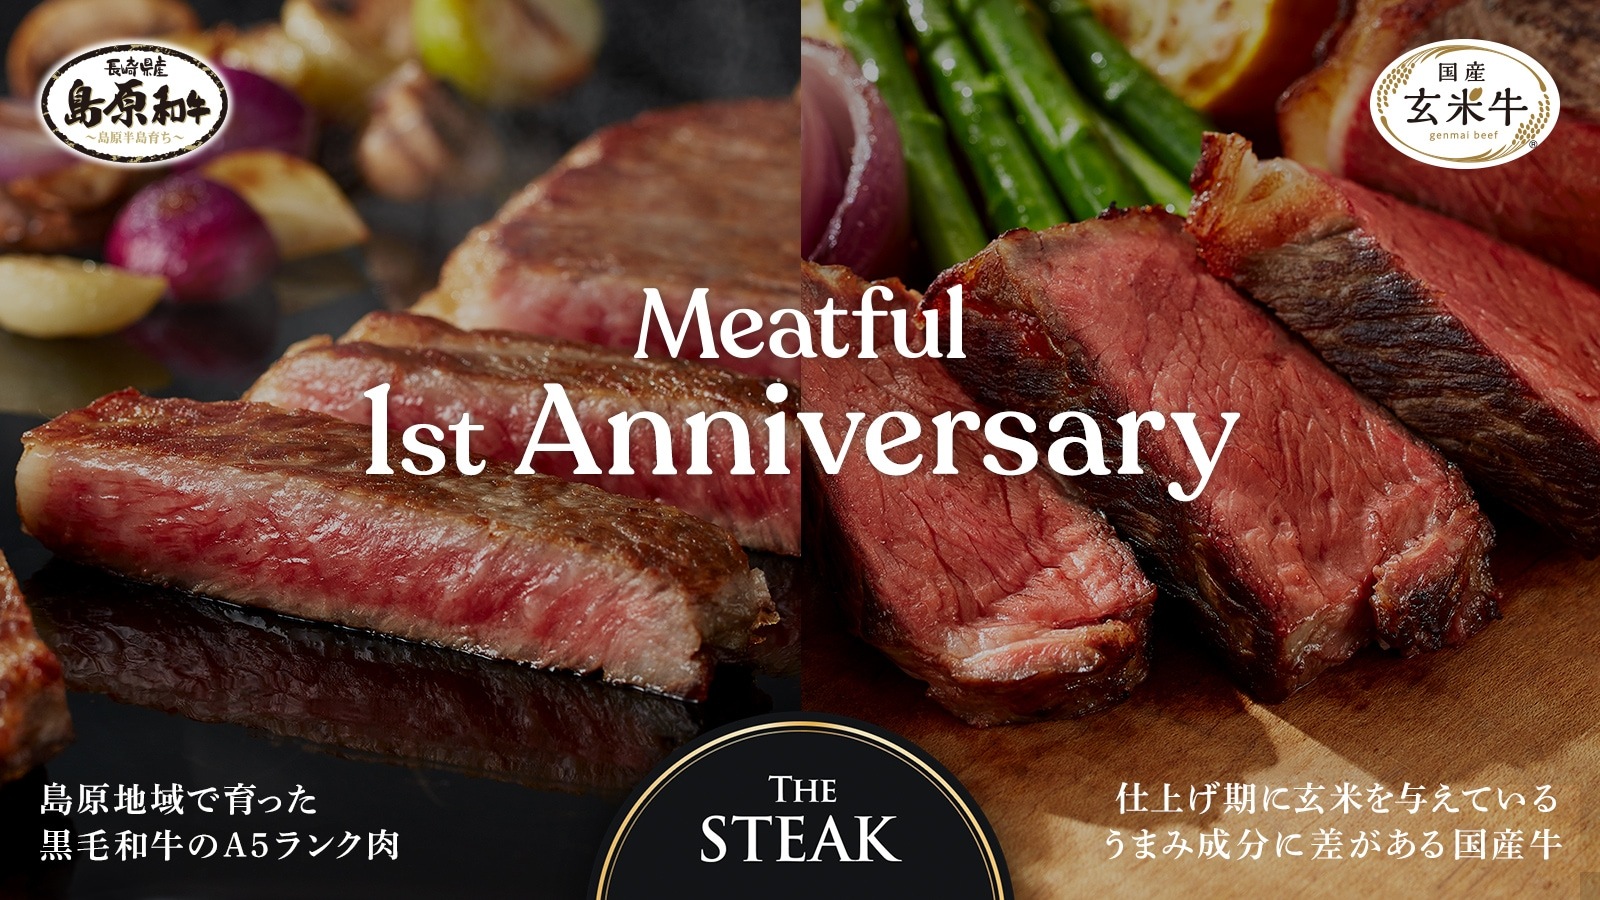 1周年 The steak